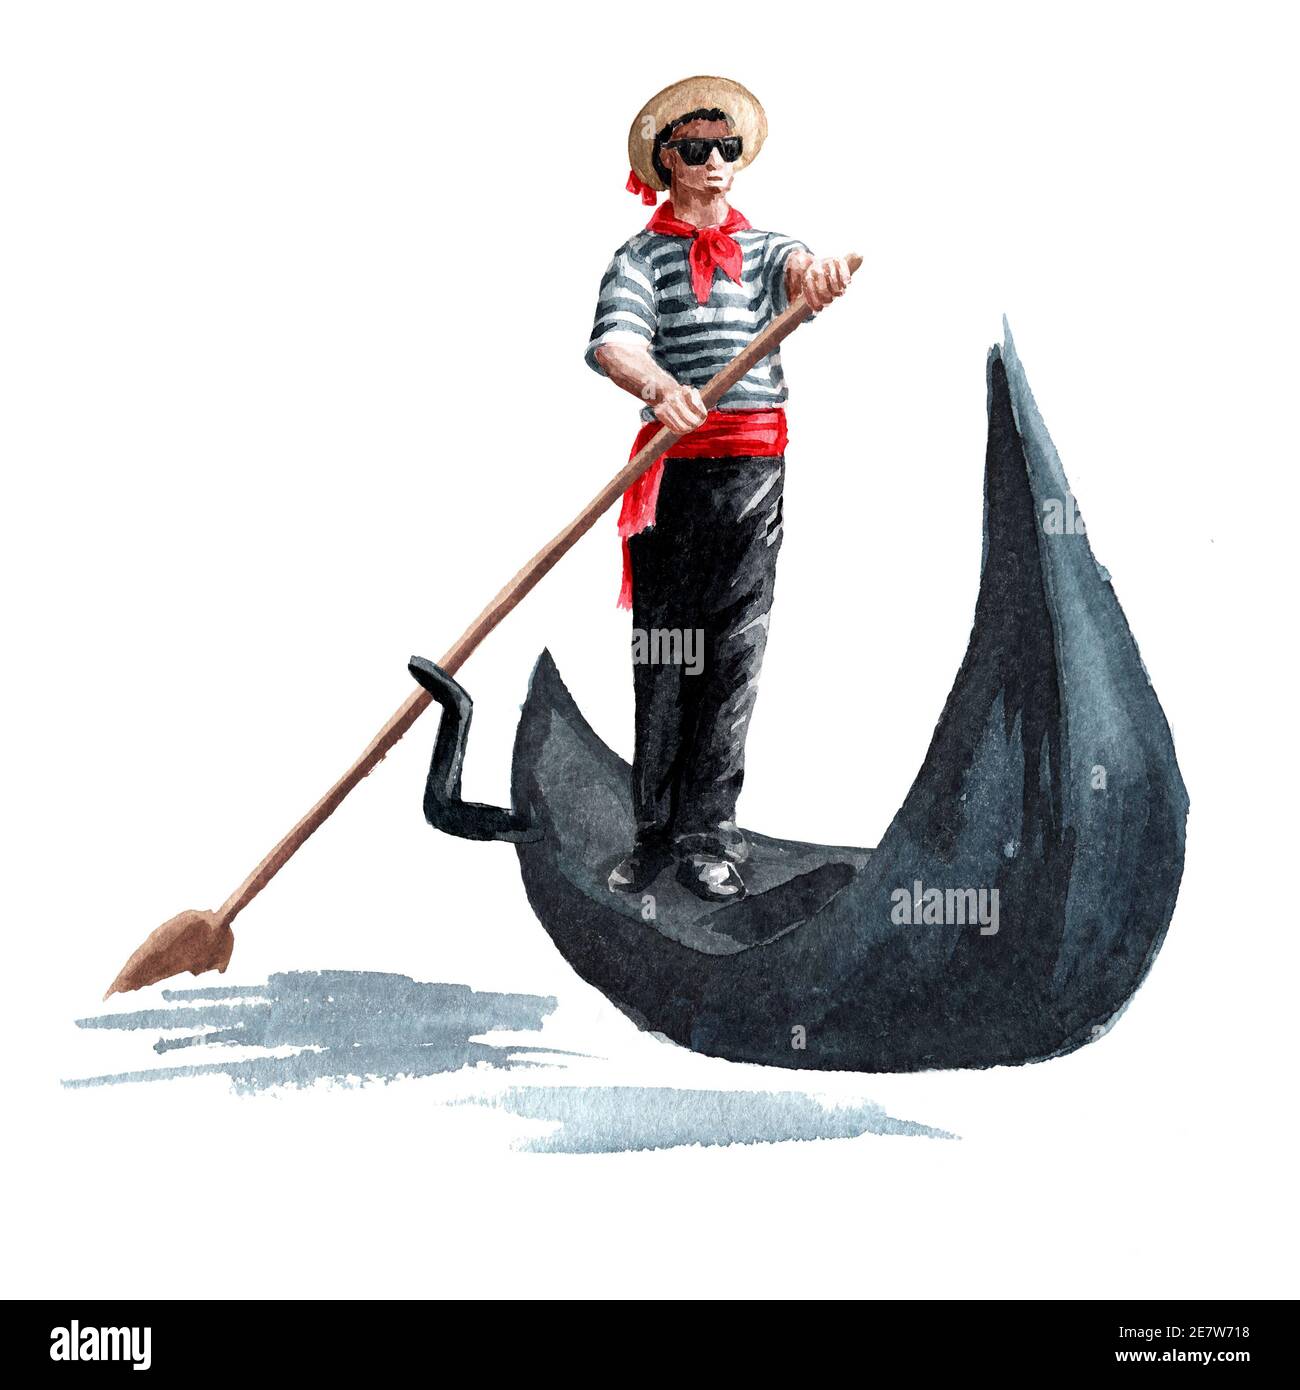 Gondolier vénitien en vêtements traditionnels, dans une gondole avec une paddle, Italie, Venise. Illustration aquarelle dessinée à la main isolée sur fond blanc Banque D'Images